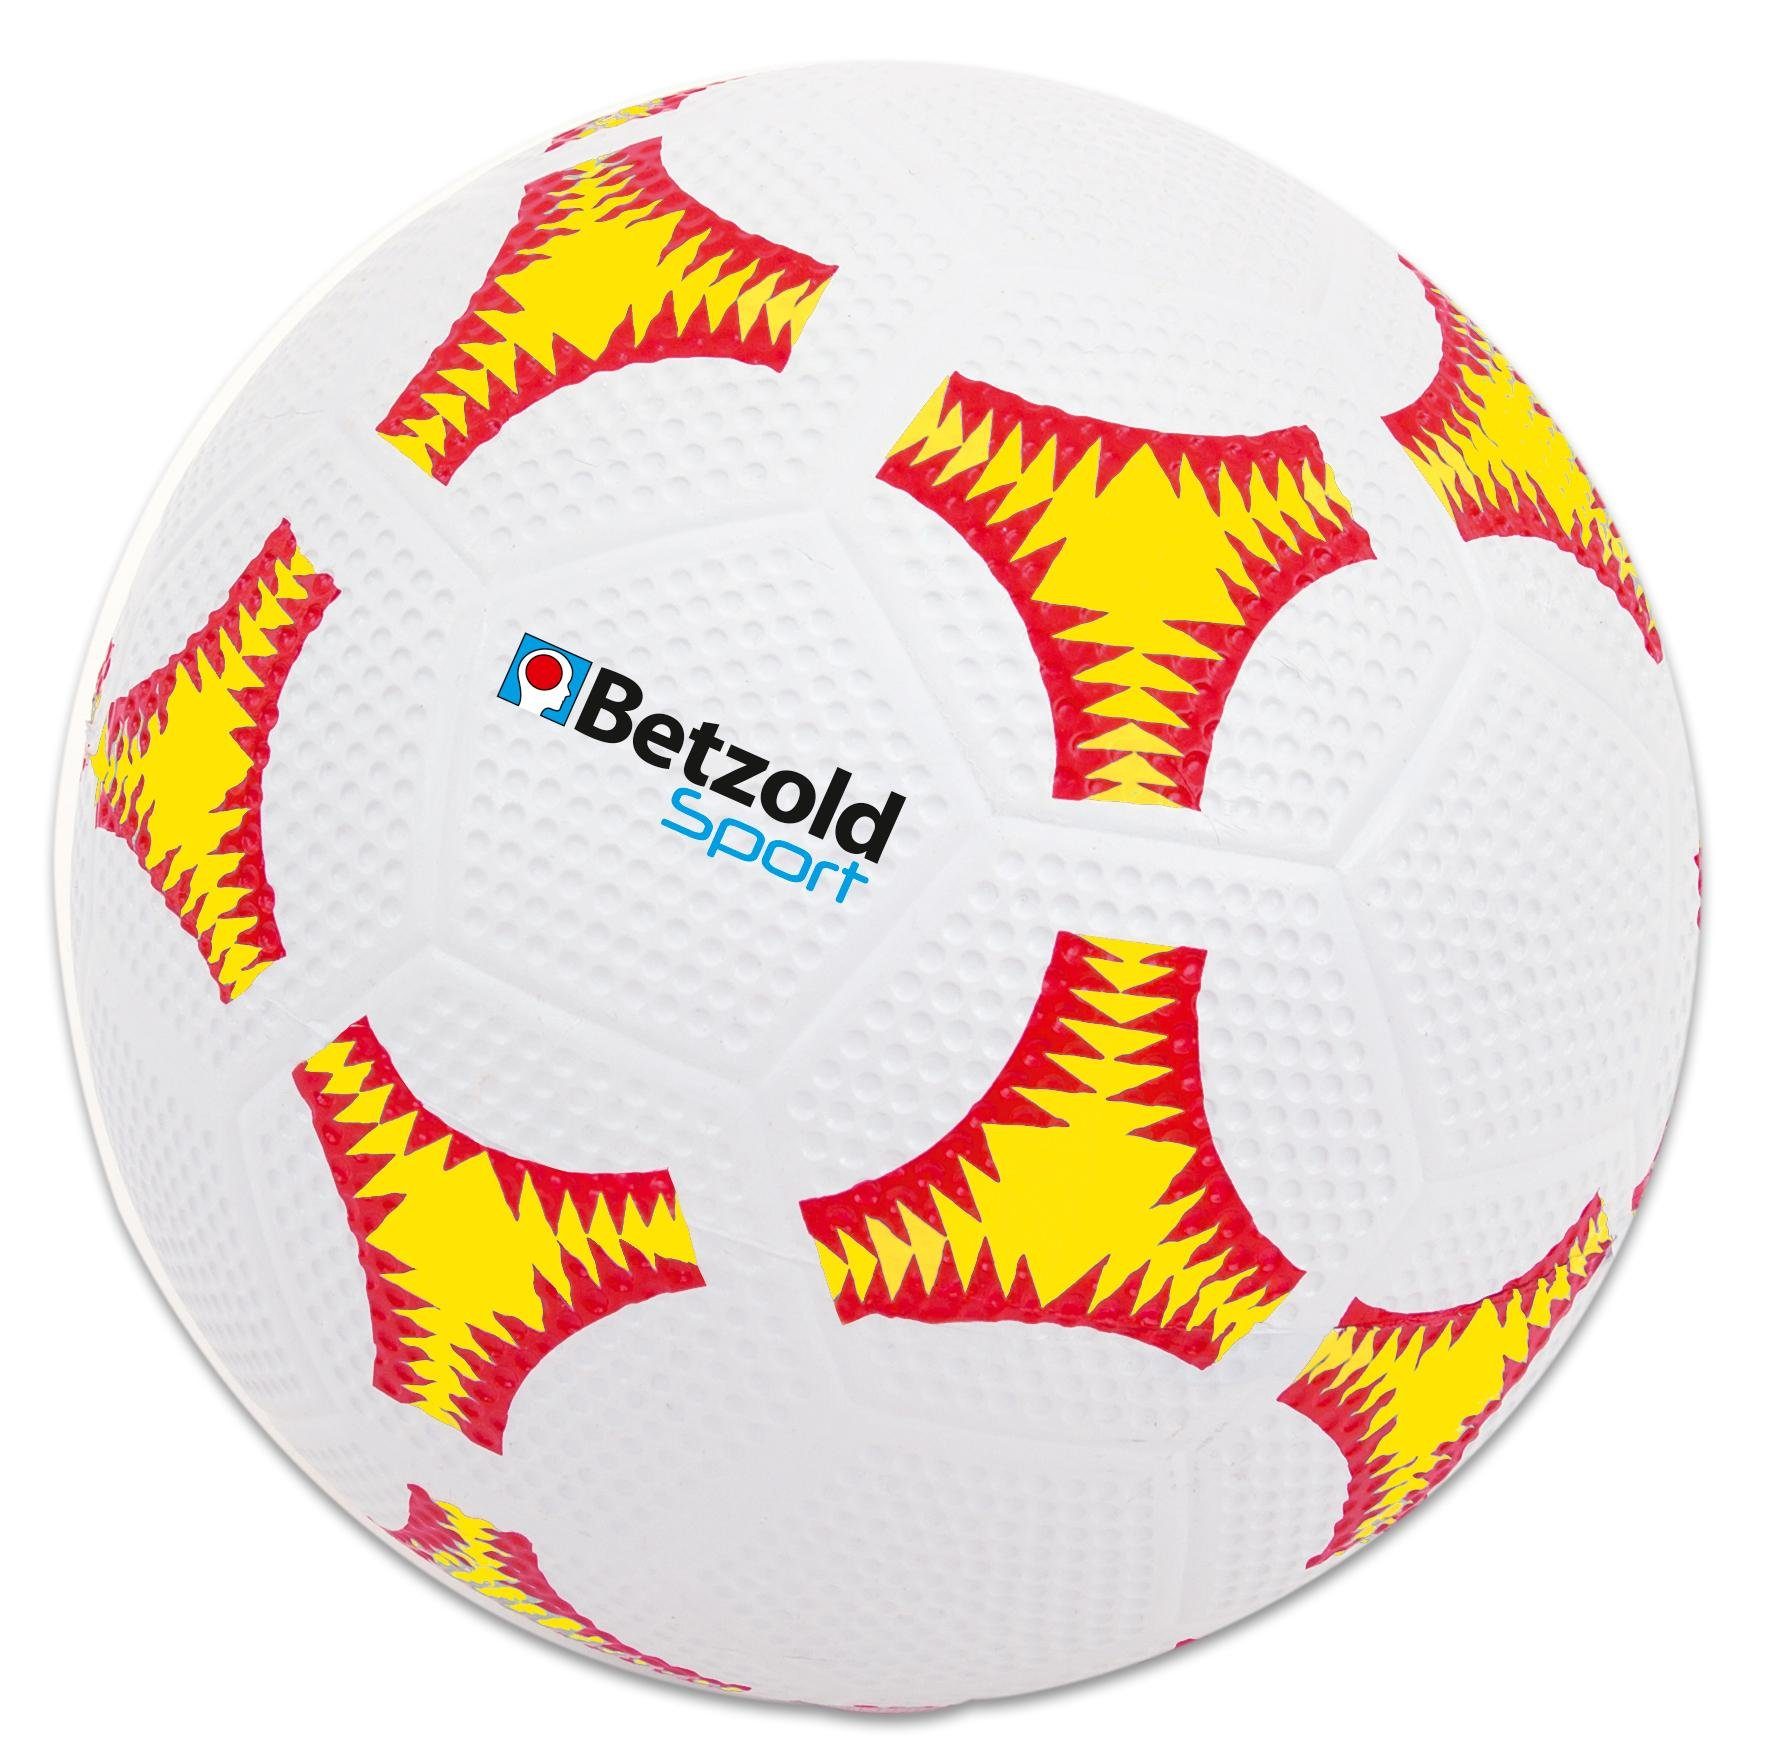 Betzold Sport Fußball Schulhof Fußball - Bälle hochwertige Мячи in Размер 5, Besonders robust